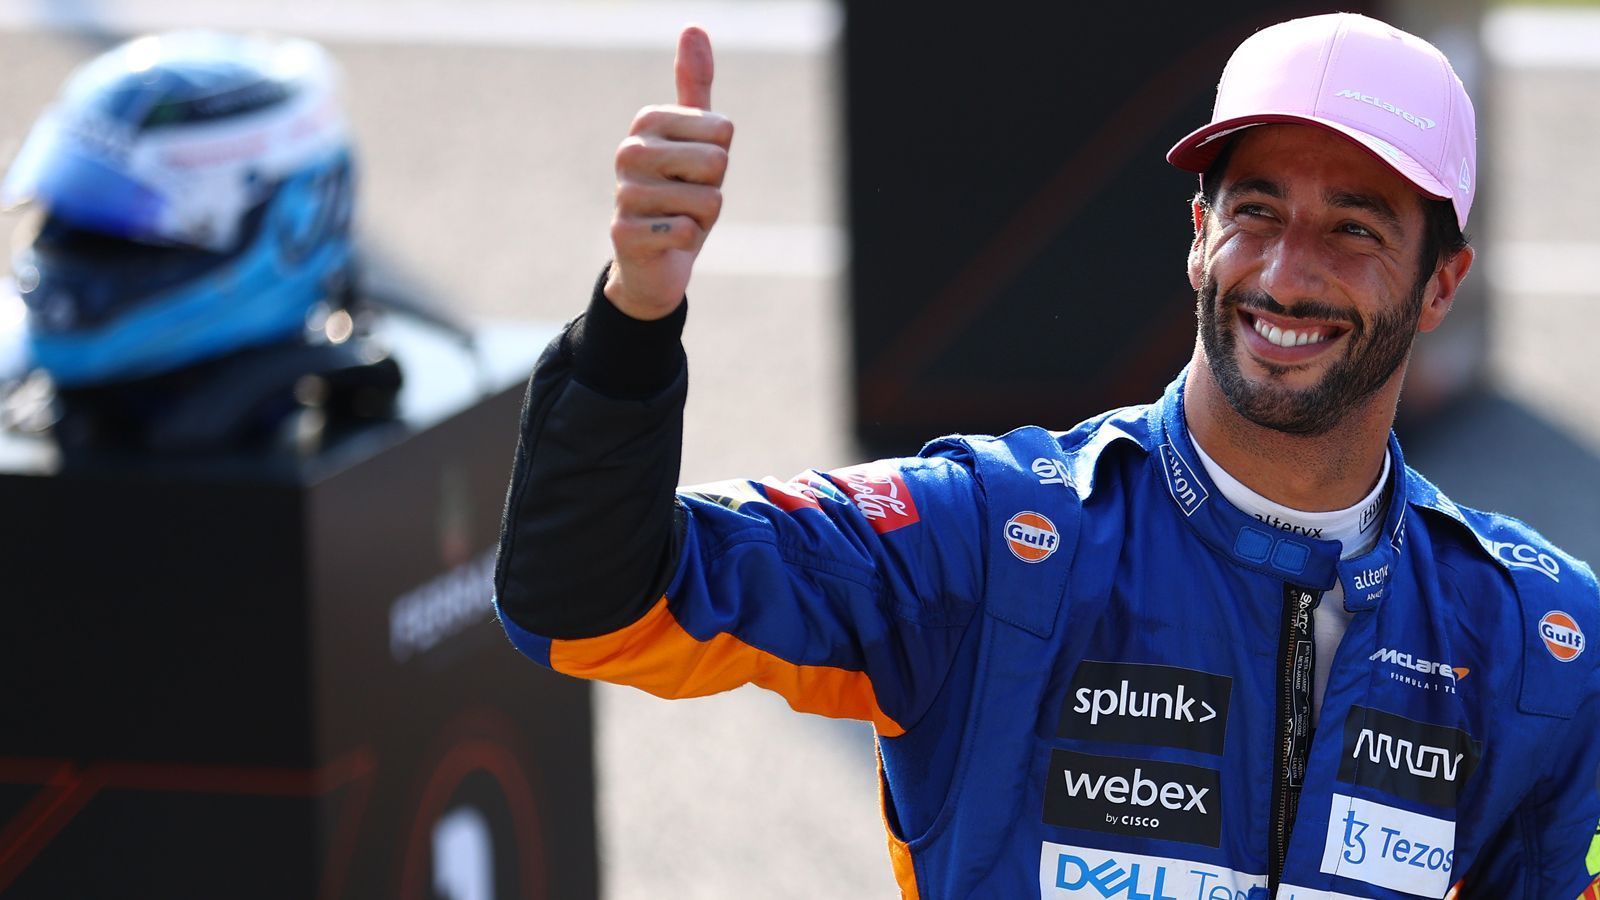 
                <strong>Gewinner: Daniel Ricciardo</strong><br>
                Der Australier hatte nach seinem Wechsel zu McLaren Anlaufschwierigkeiten, er kommt jetzt aber immer besser in Schwung. Sein erster Sieg im McLaren, der achte seiner Karriere, ist ein Befreiungsschlag. "Ich habe es am Freitag in mir Gefühl, ich dachte, es kommt noch etwas Gutes", sagte Ricciardo. "Es muss etwas passiert sein, er hat den Schritt gemacht. Er hat zu seiner Stärke im Auto zurückgefunden", sagte Sky-Experte Ralf Schumacher. "Ich habe mich etwas versteckt in dieser Saison, und habe darauf gesetzt, dass jetzt die Siege kommen", scherzte Ricciardo. 
              